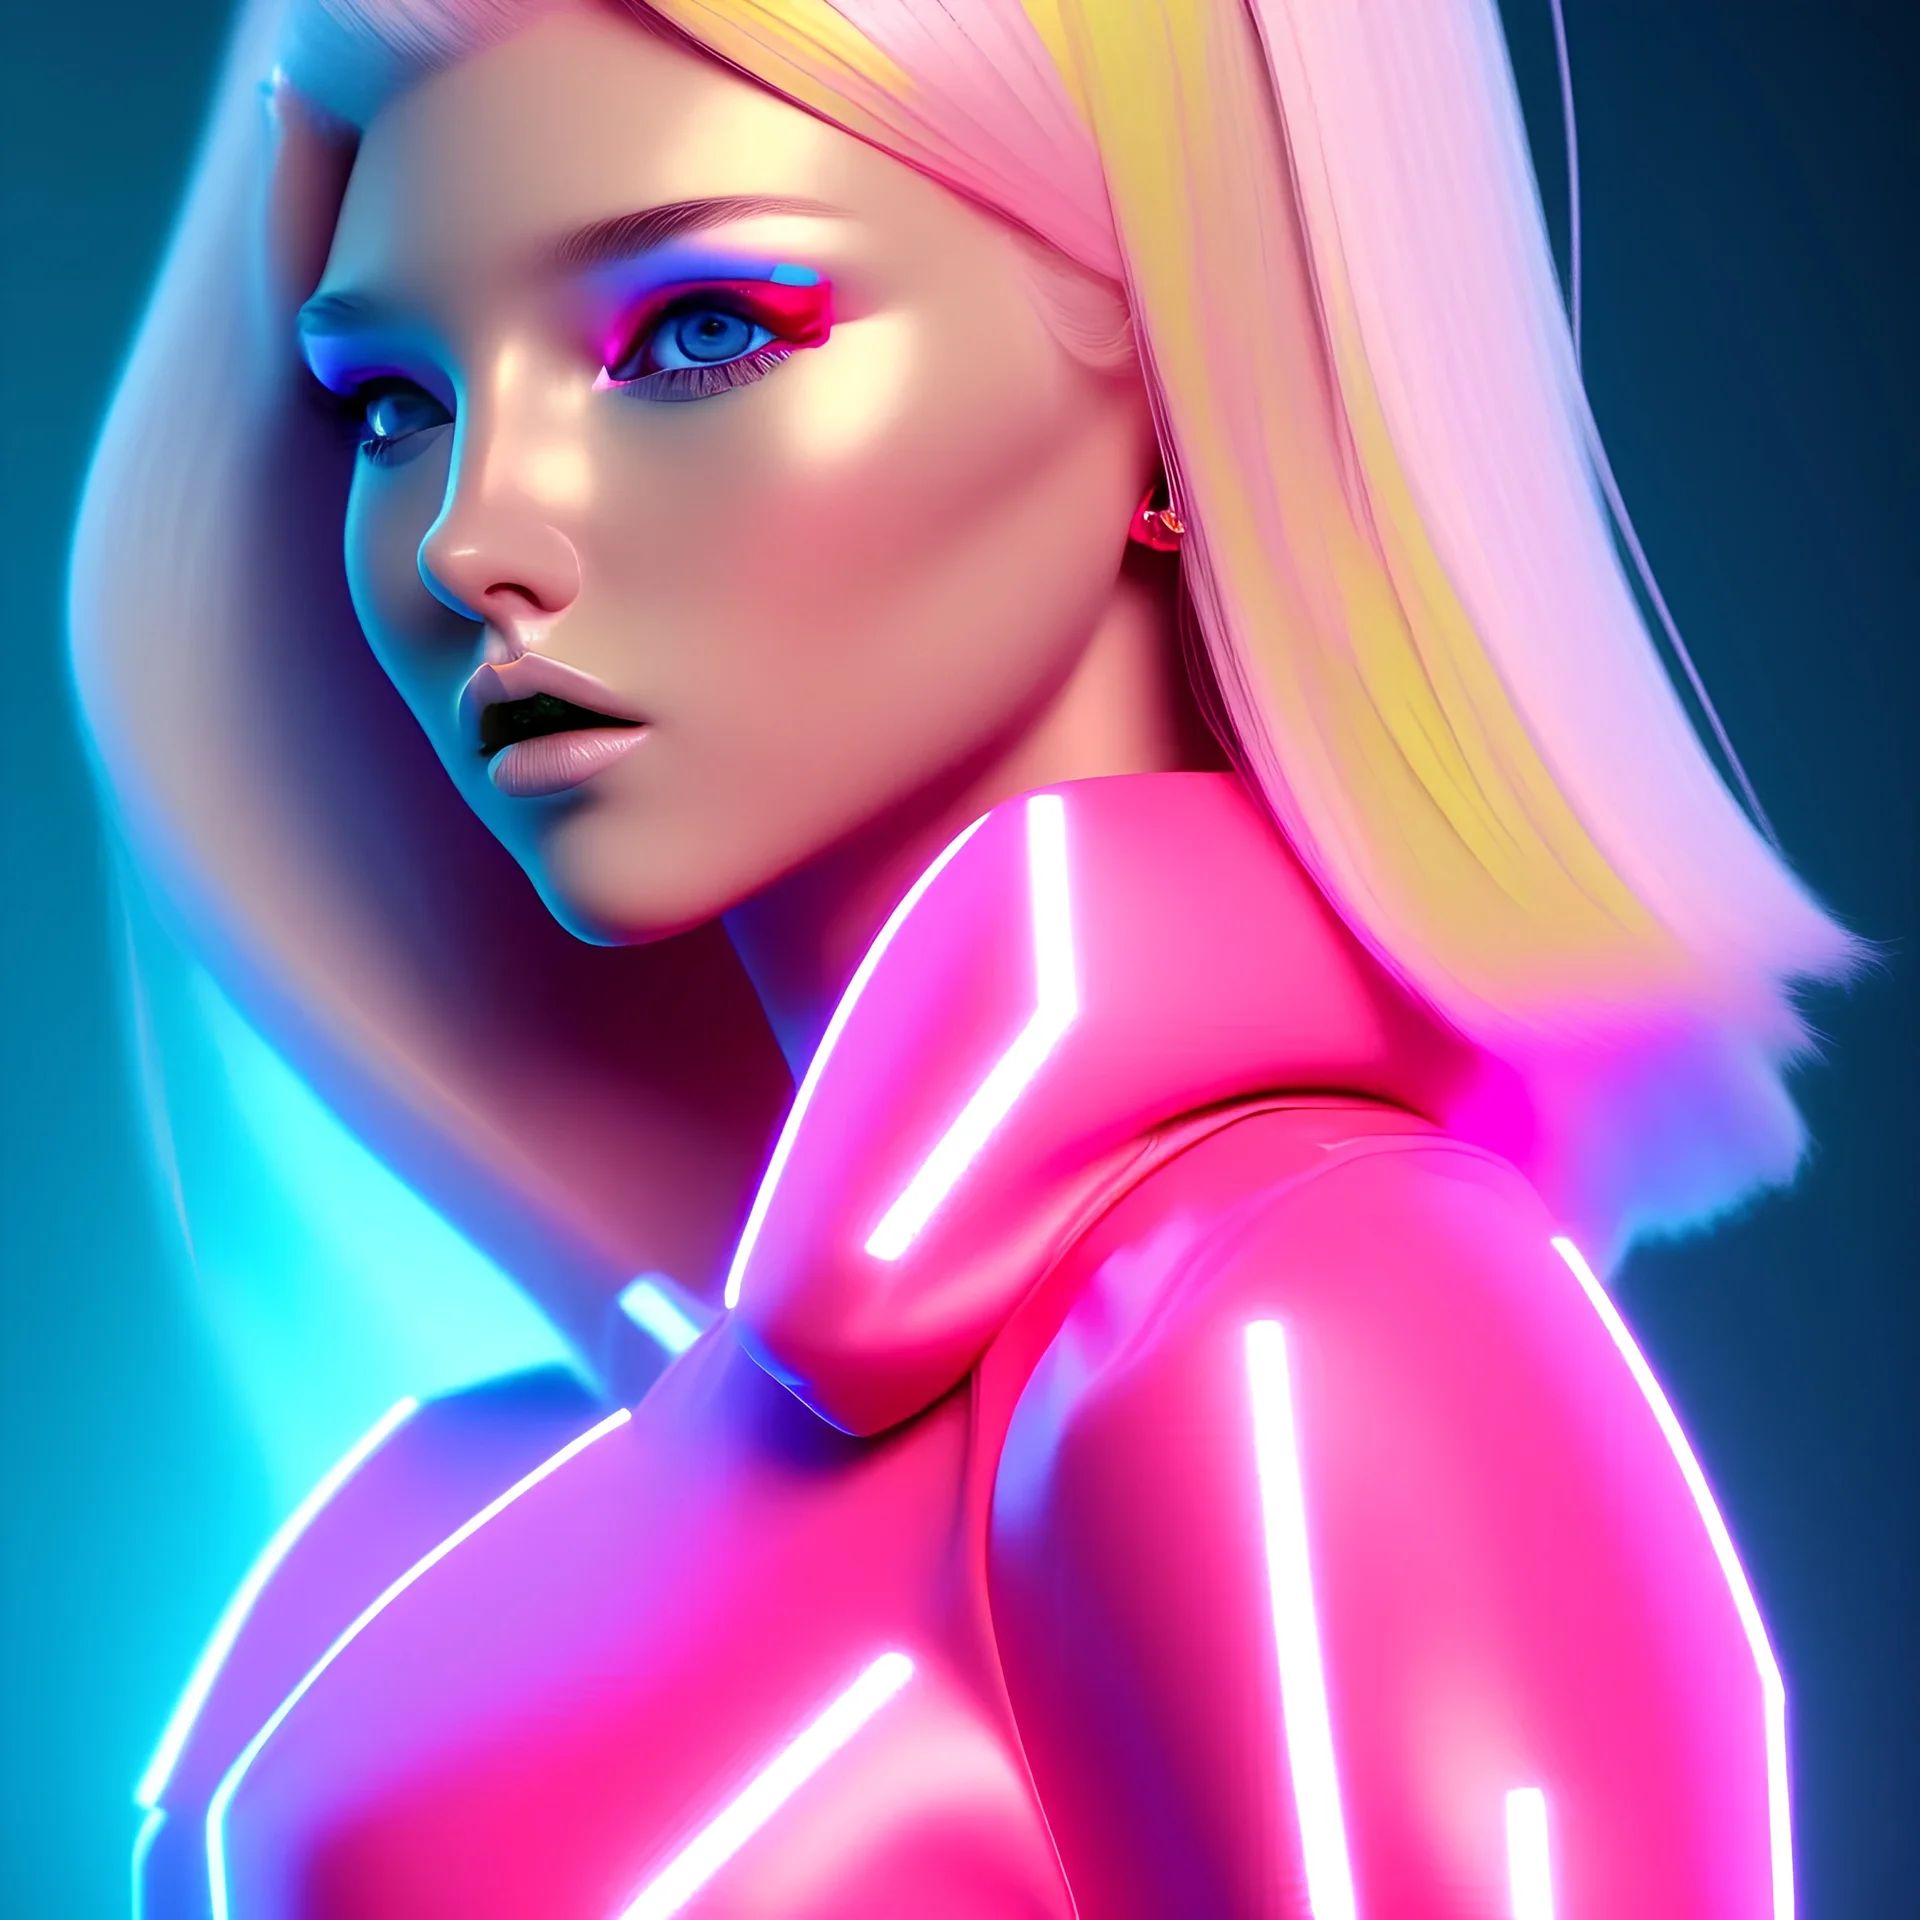 Neon blonde pop girl in pink costume